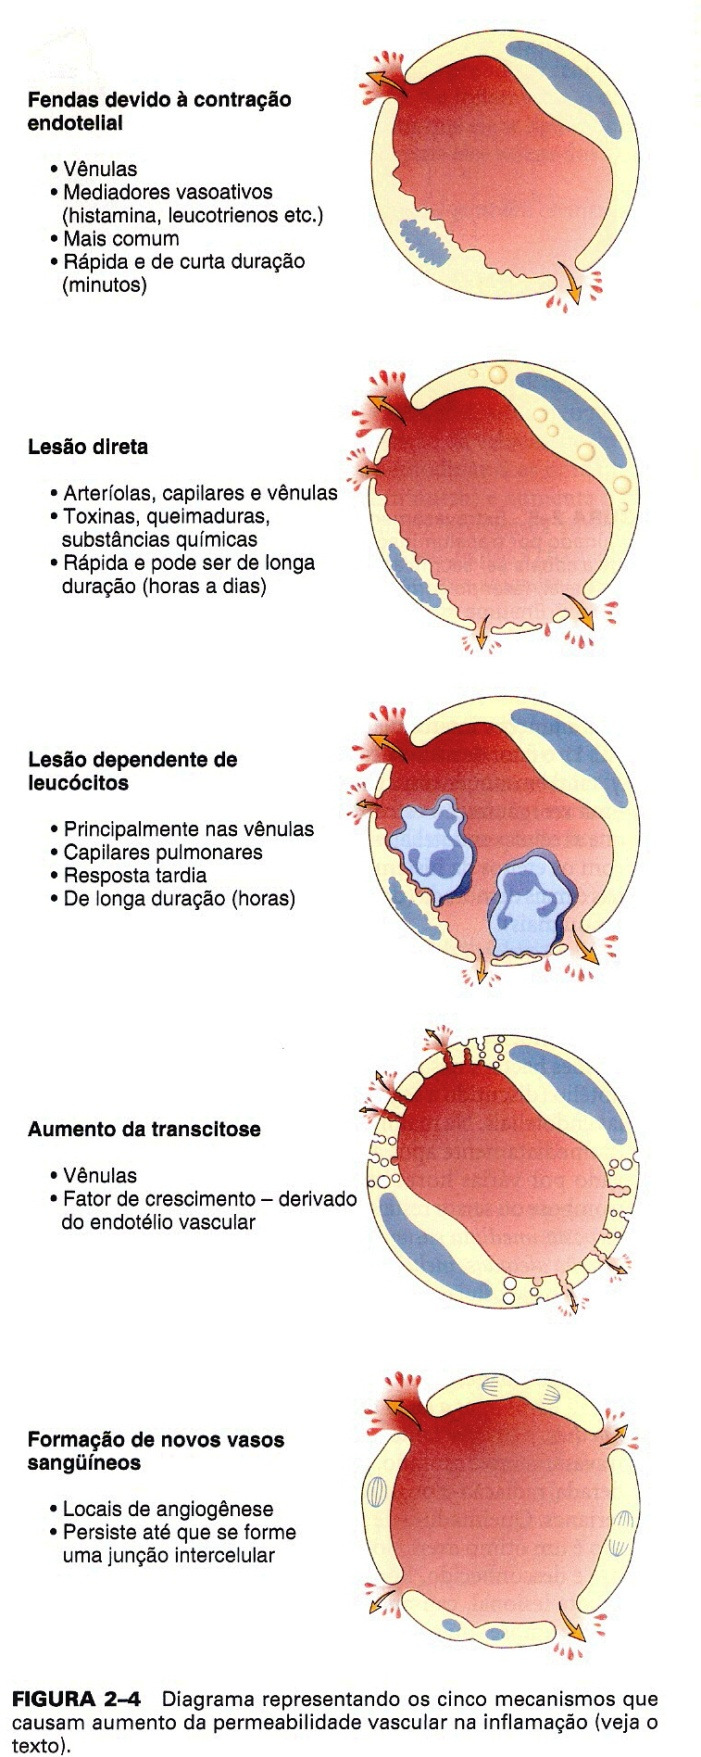 A perda de líquido resulta em uma concentração de hemácias nos vasos, aumento da viscosidade sanguínea e fluxo sanguíneo lento (estase), que facilita a adesão de leucócitos, especialmente os